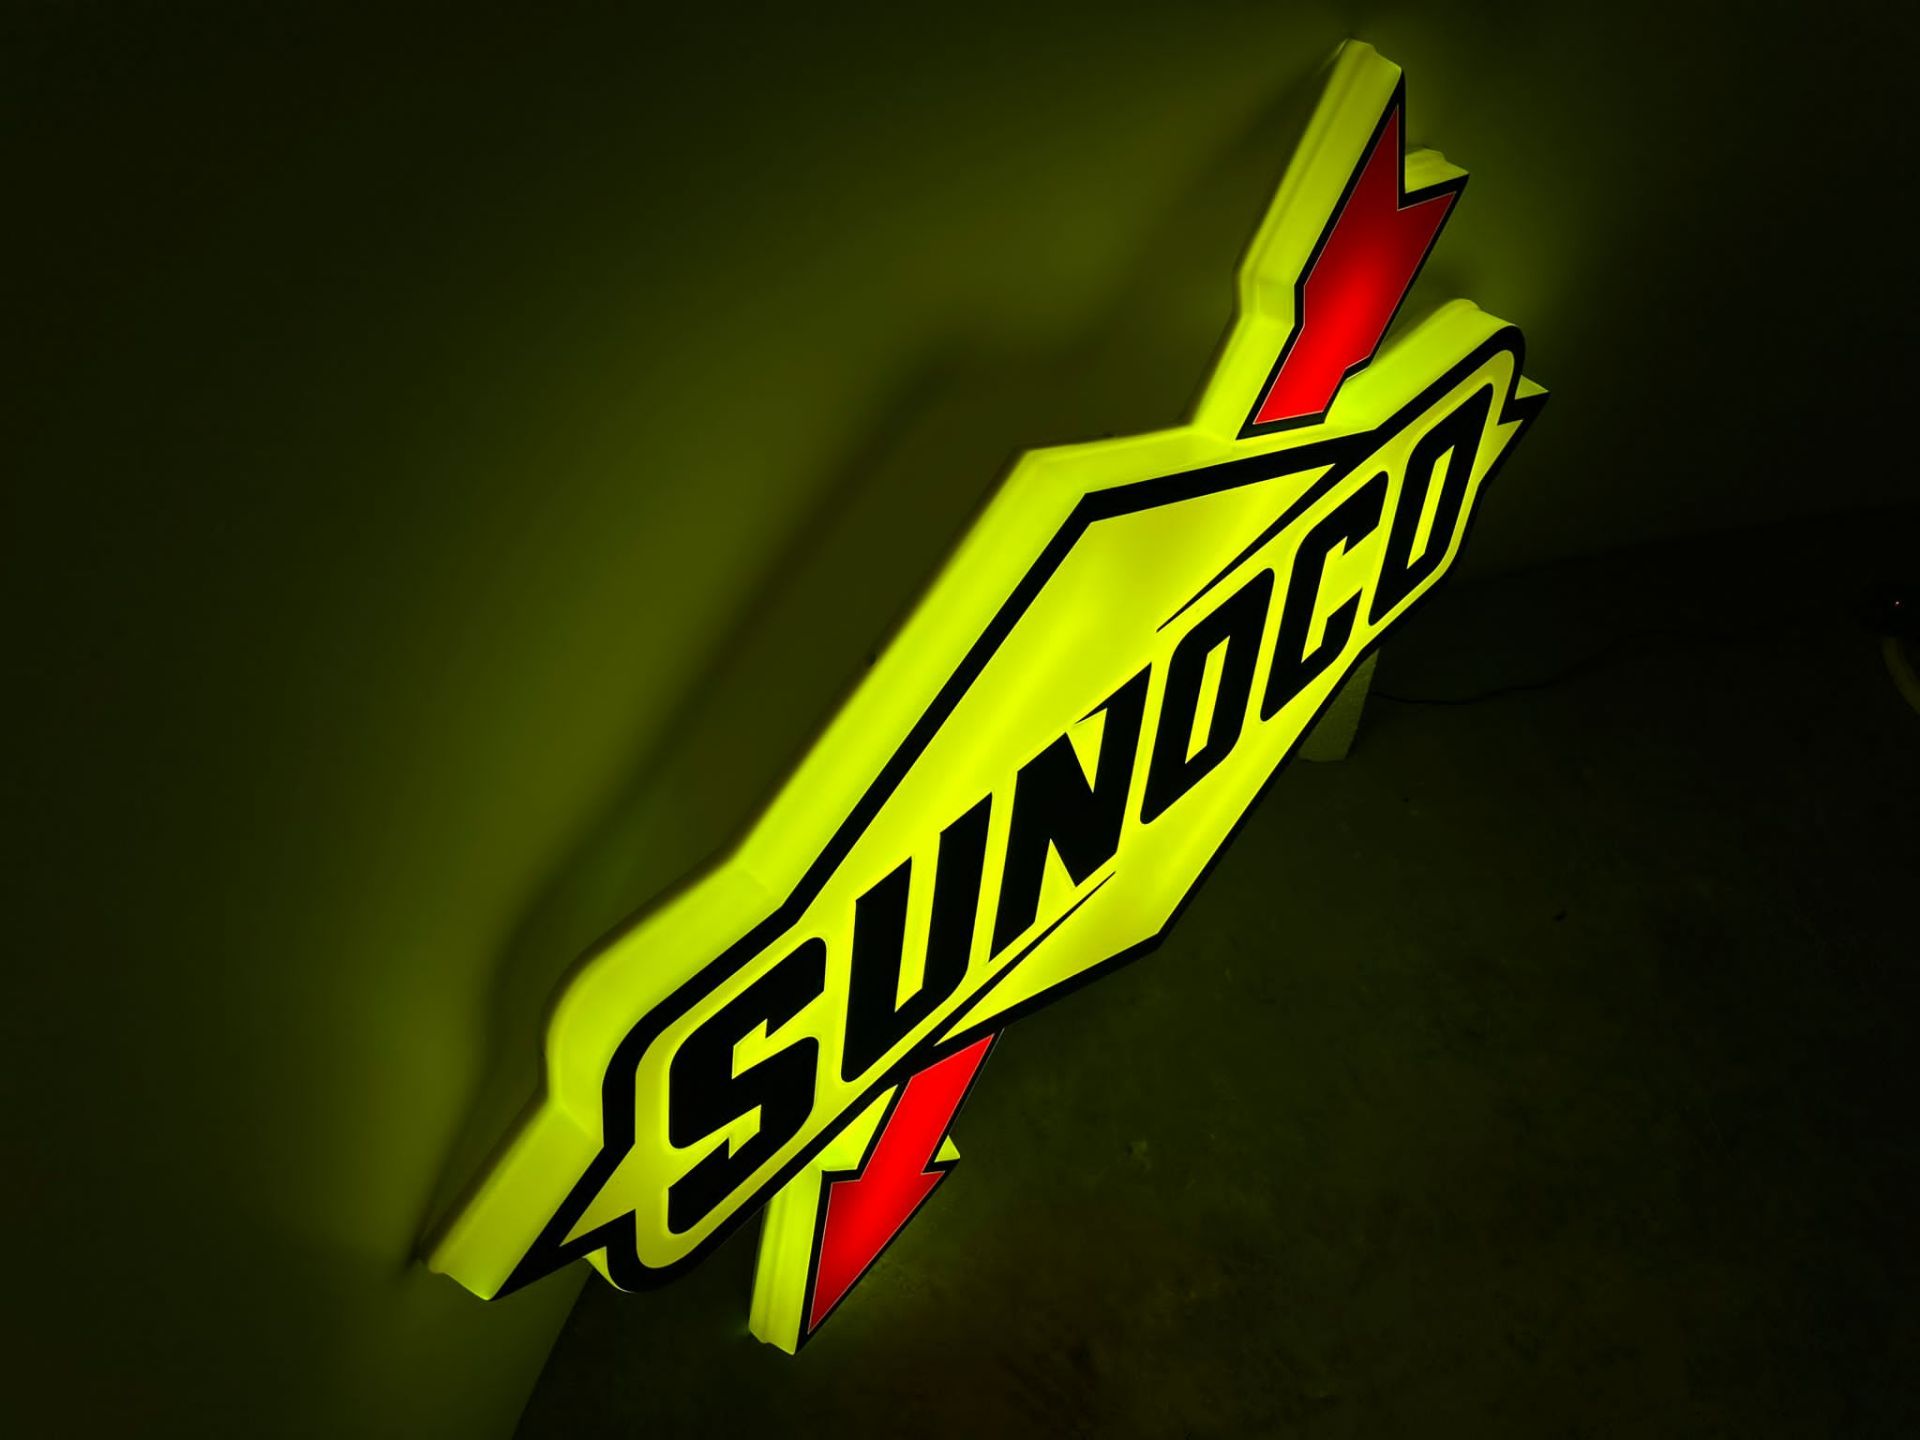 Sunoco illuminated sign - Image 6 of 6